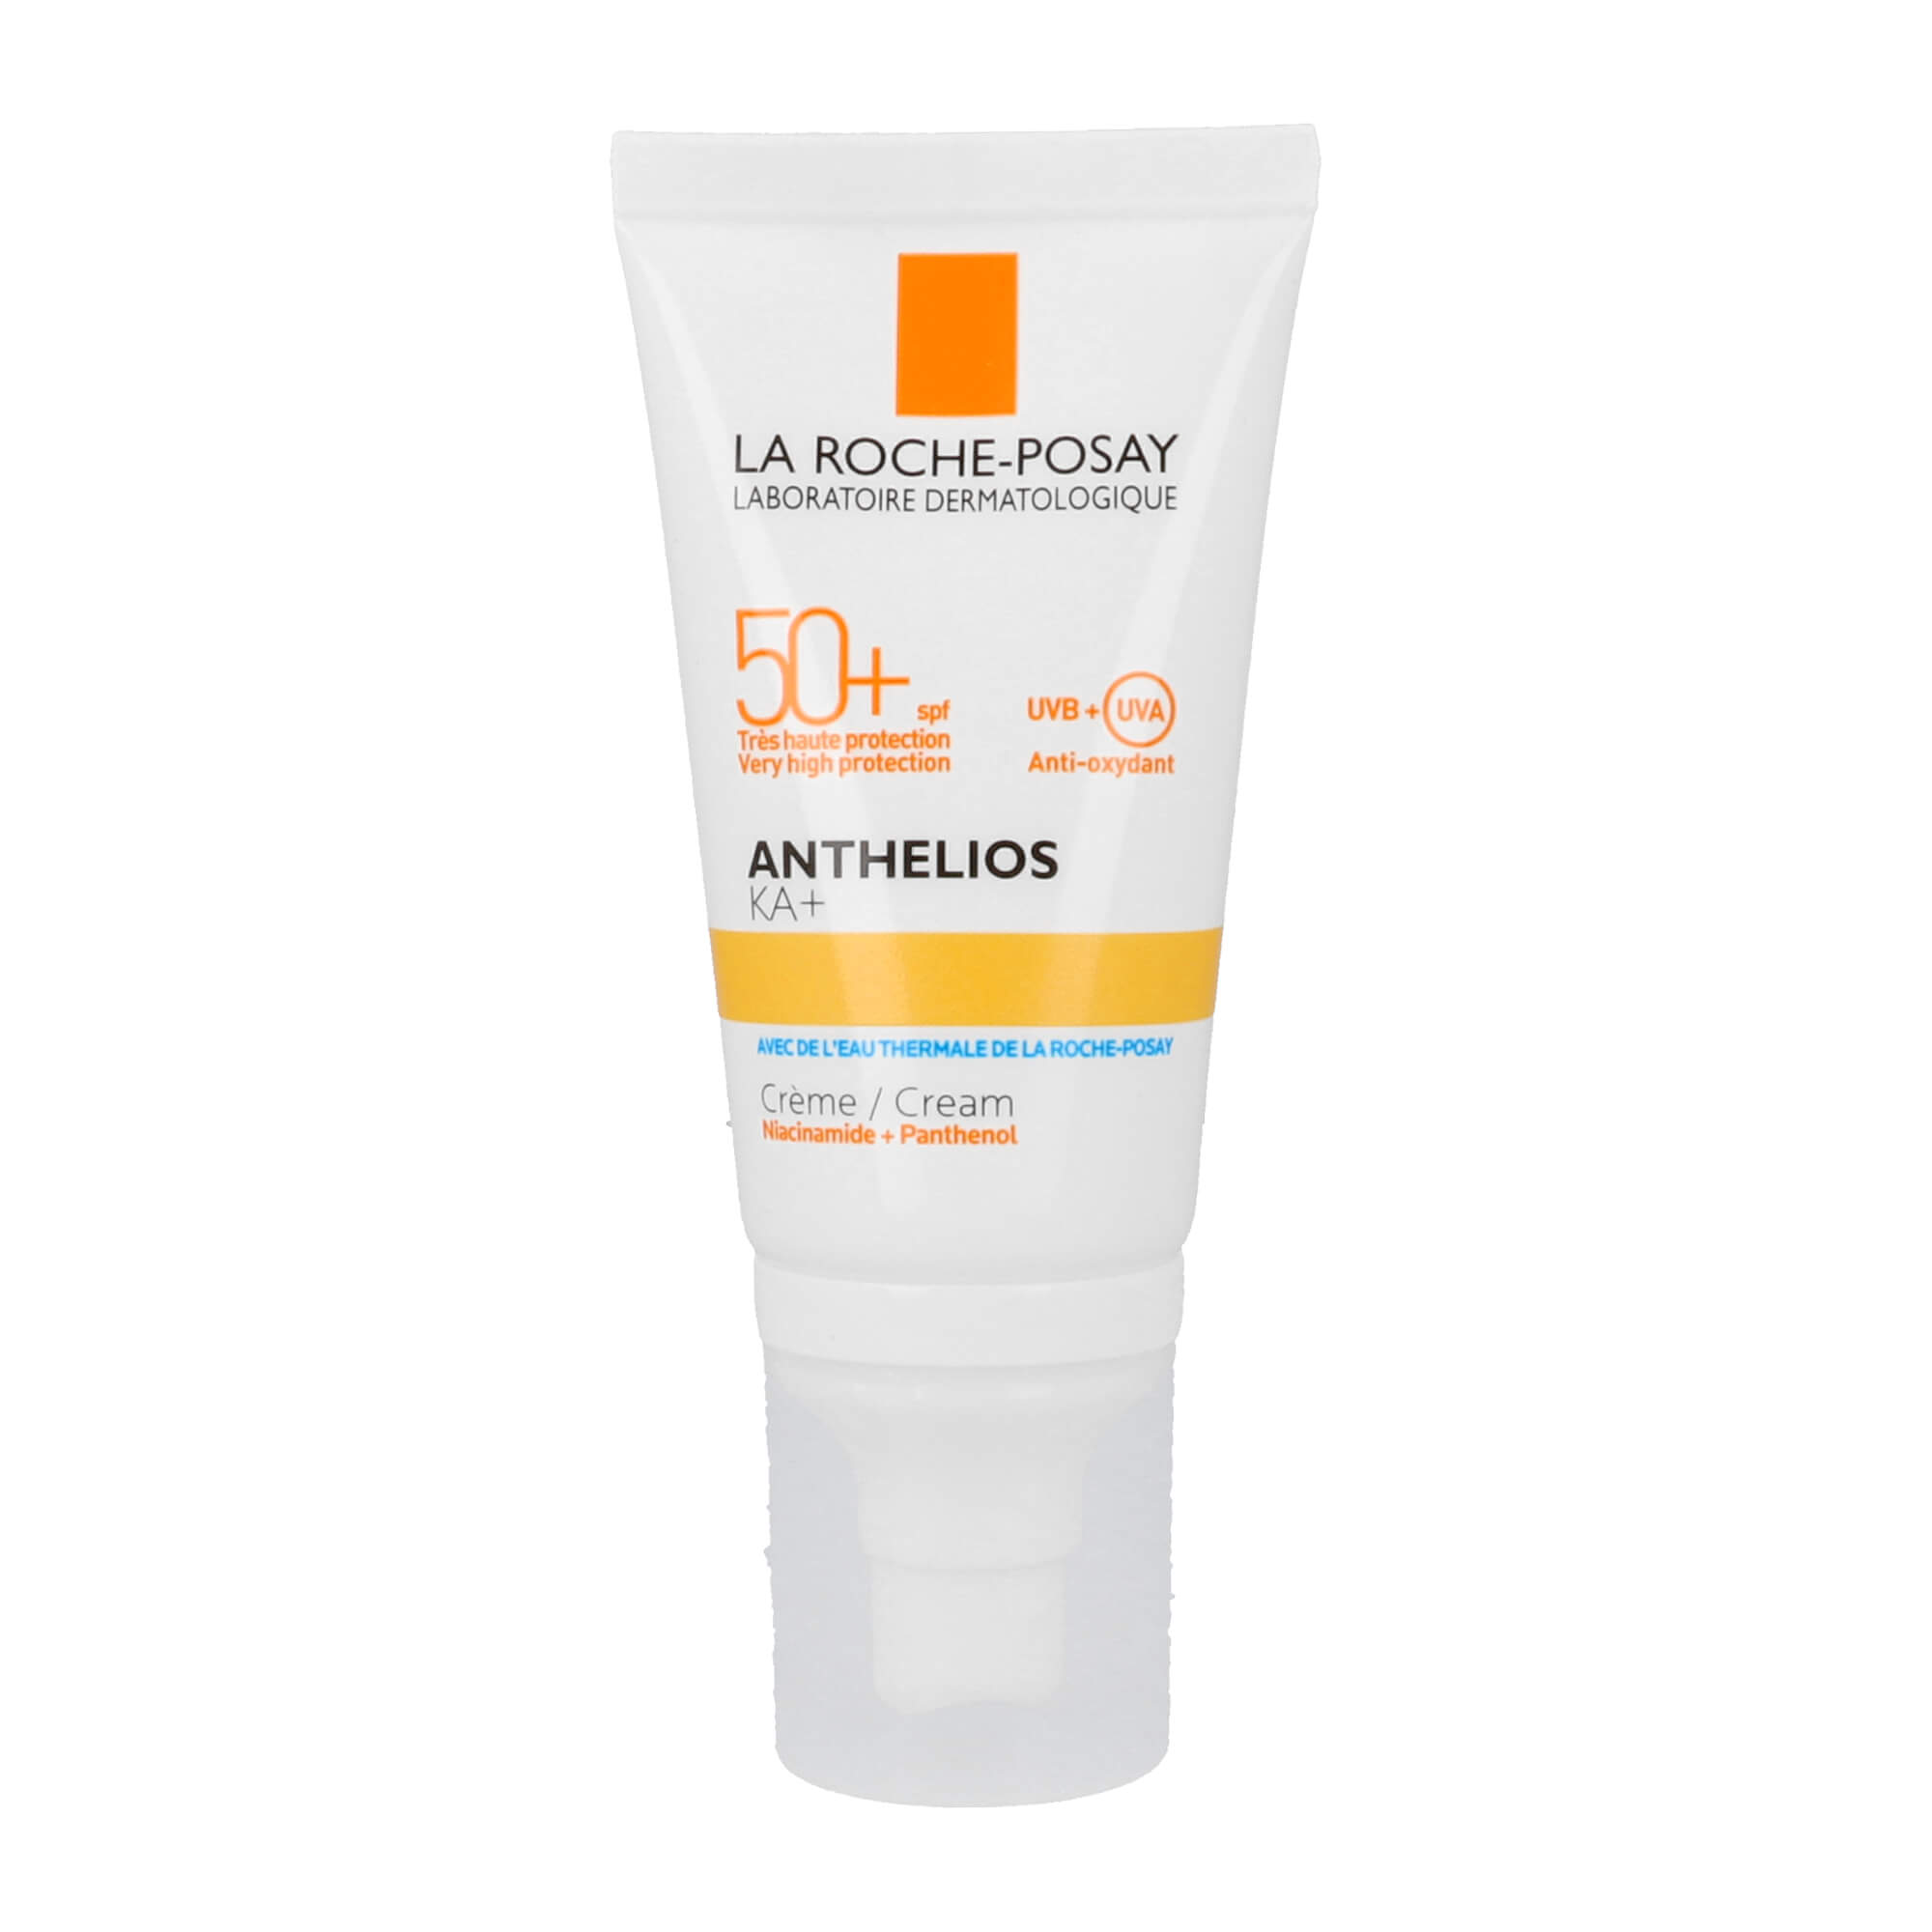 Sonnenschutzcreme mit LSF 50+. Für sehr lichtempfindliche Haut, die zu UV-bedingten Hautveränderungen neigt.